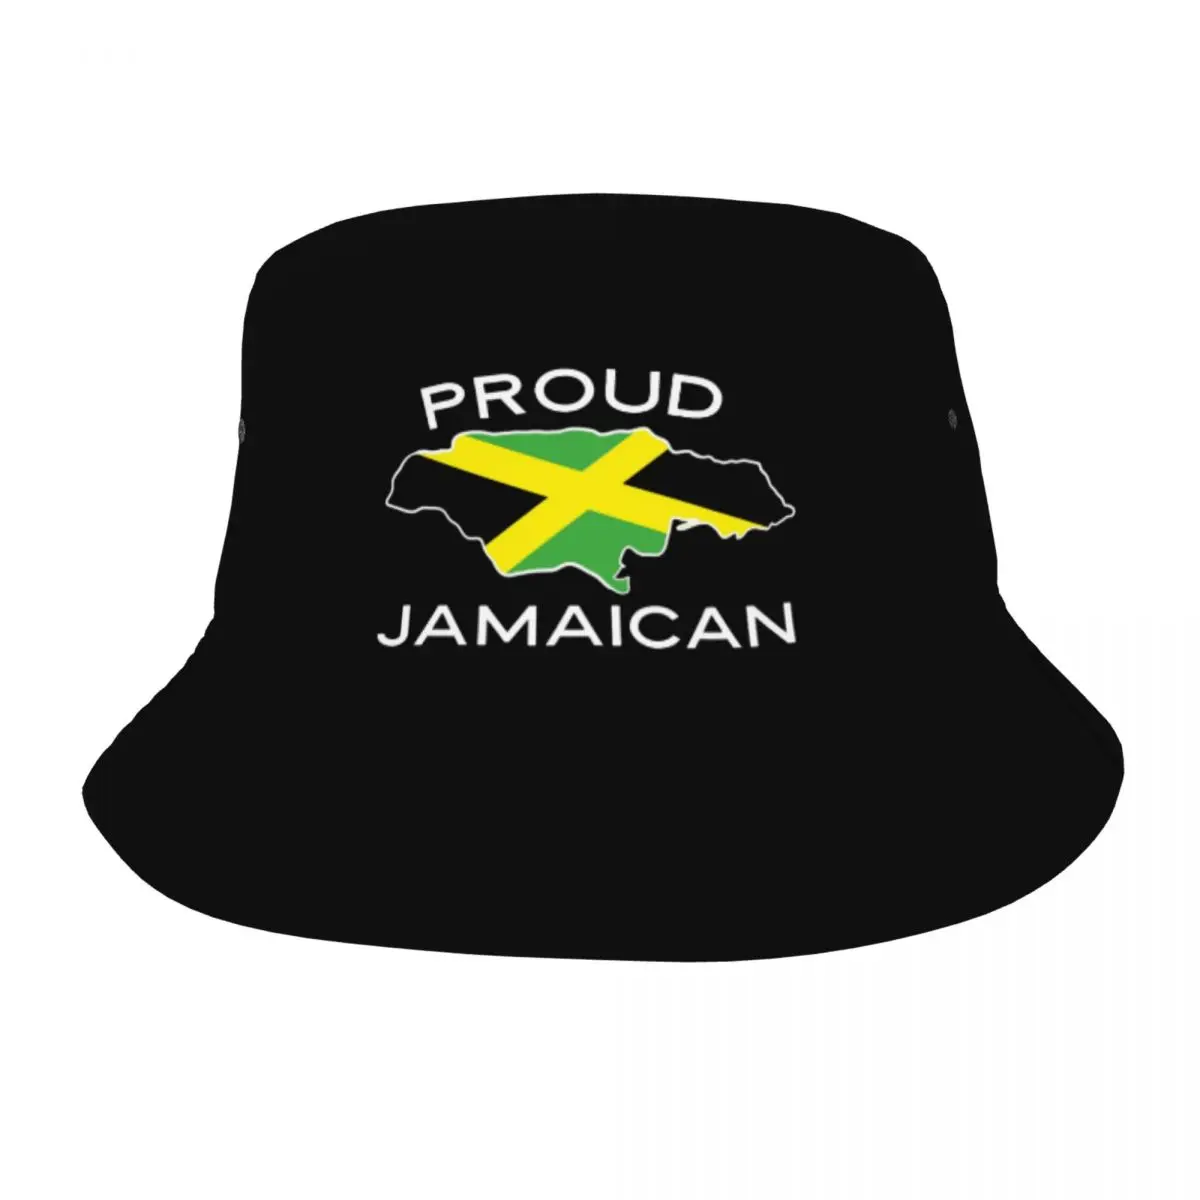 

Панама для подростков, шляпа с флагом Ямайки, Легкий головной убор для кемпинга и рыбалки, подарок на лето